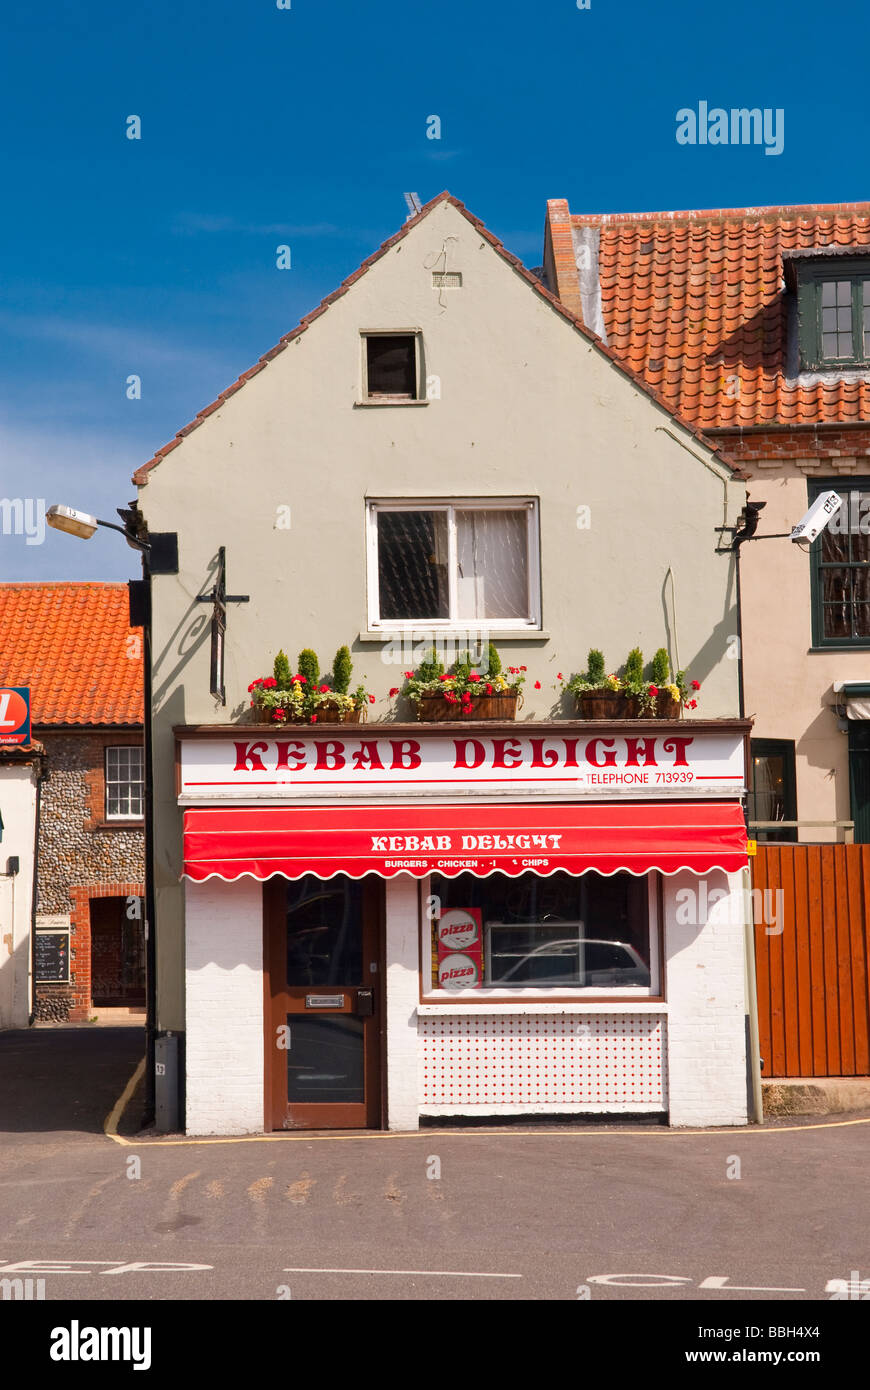 Delight Kebab-Imbiss Schnellrestaurant in Holt Norfolk Uk verkaufen Hähnchen Döner Burger und Pommes Frites zum mitnehmen Stockfoto